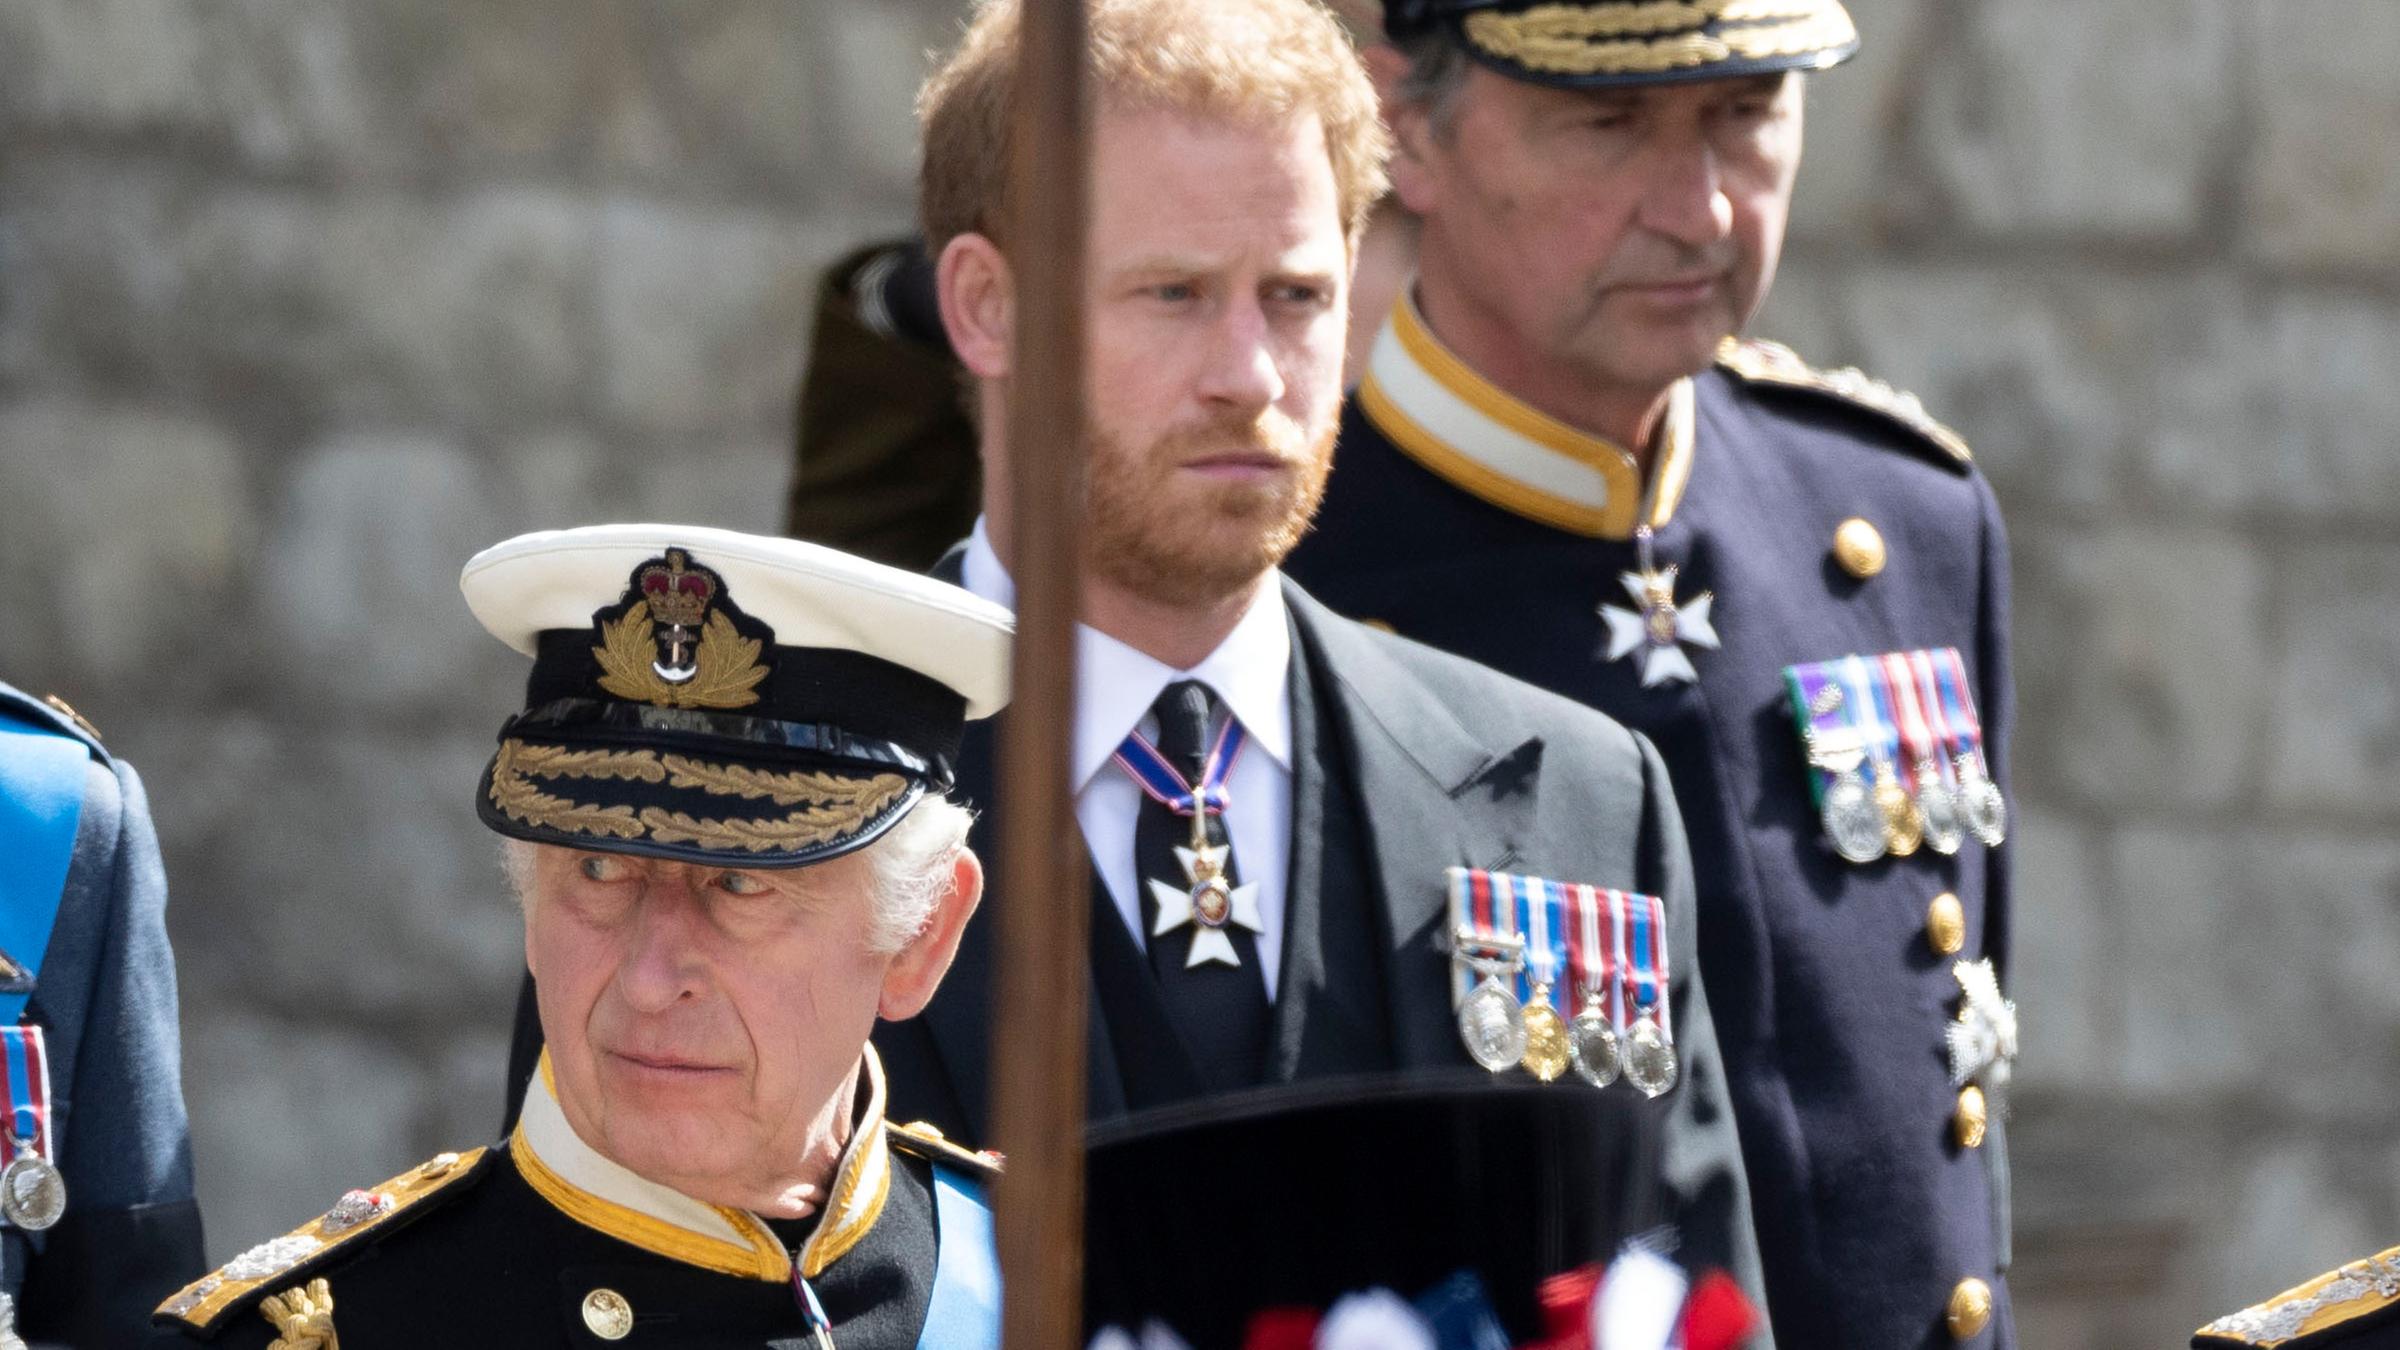 König Charles III und Prinz Harry, aufgenommen am 18.09.2022 in London